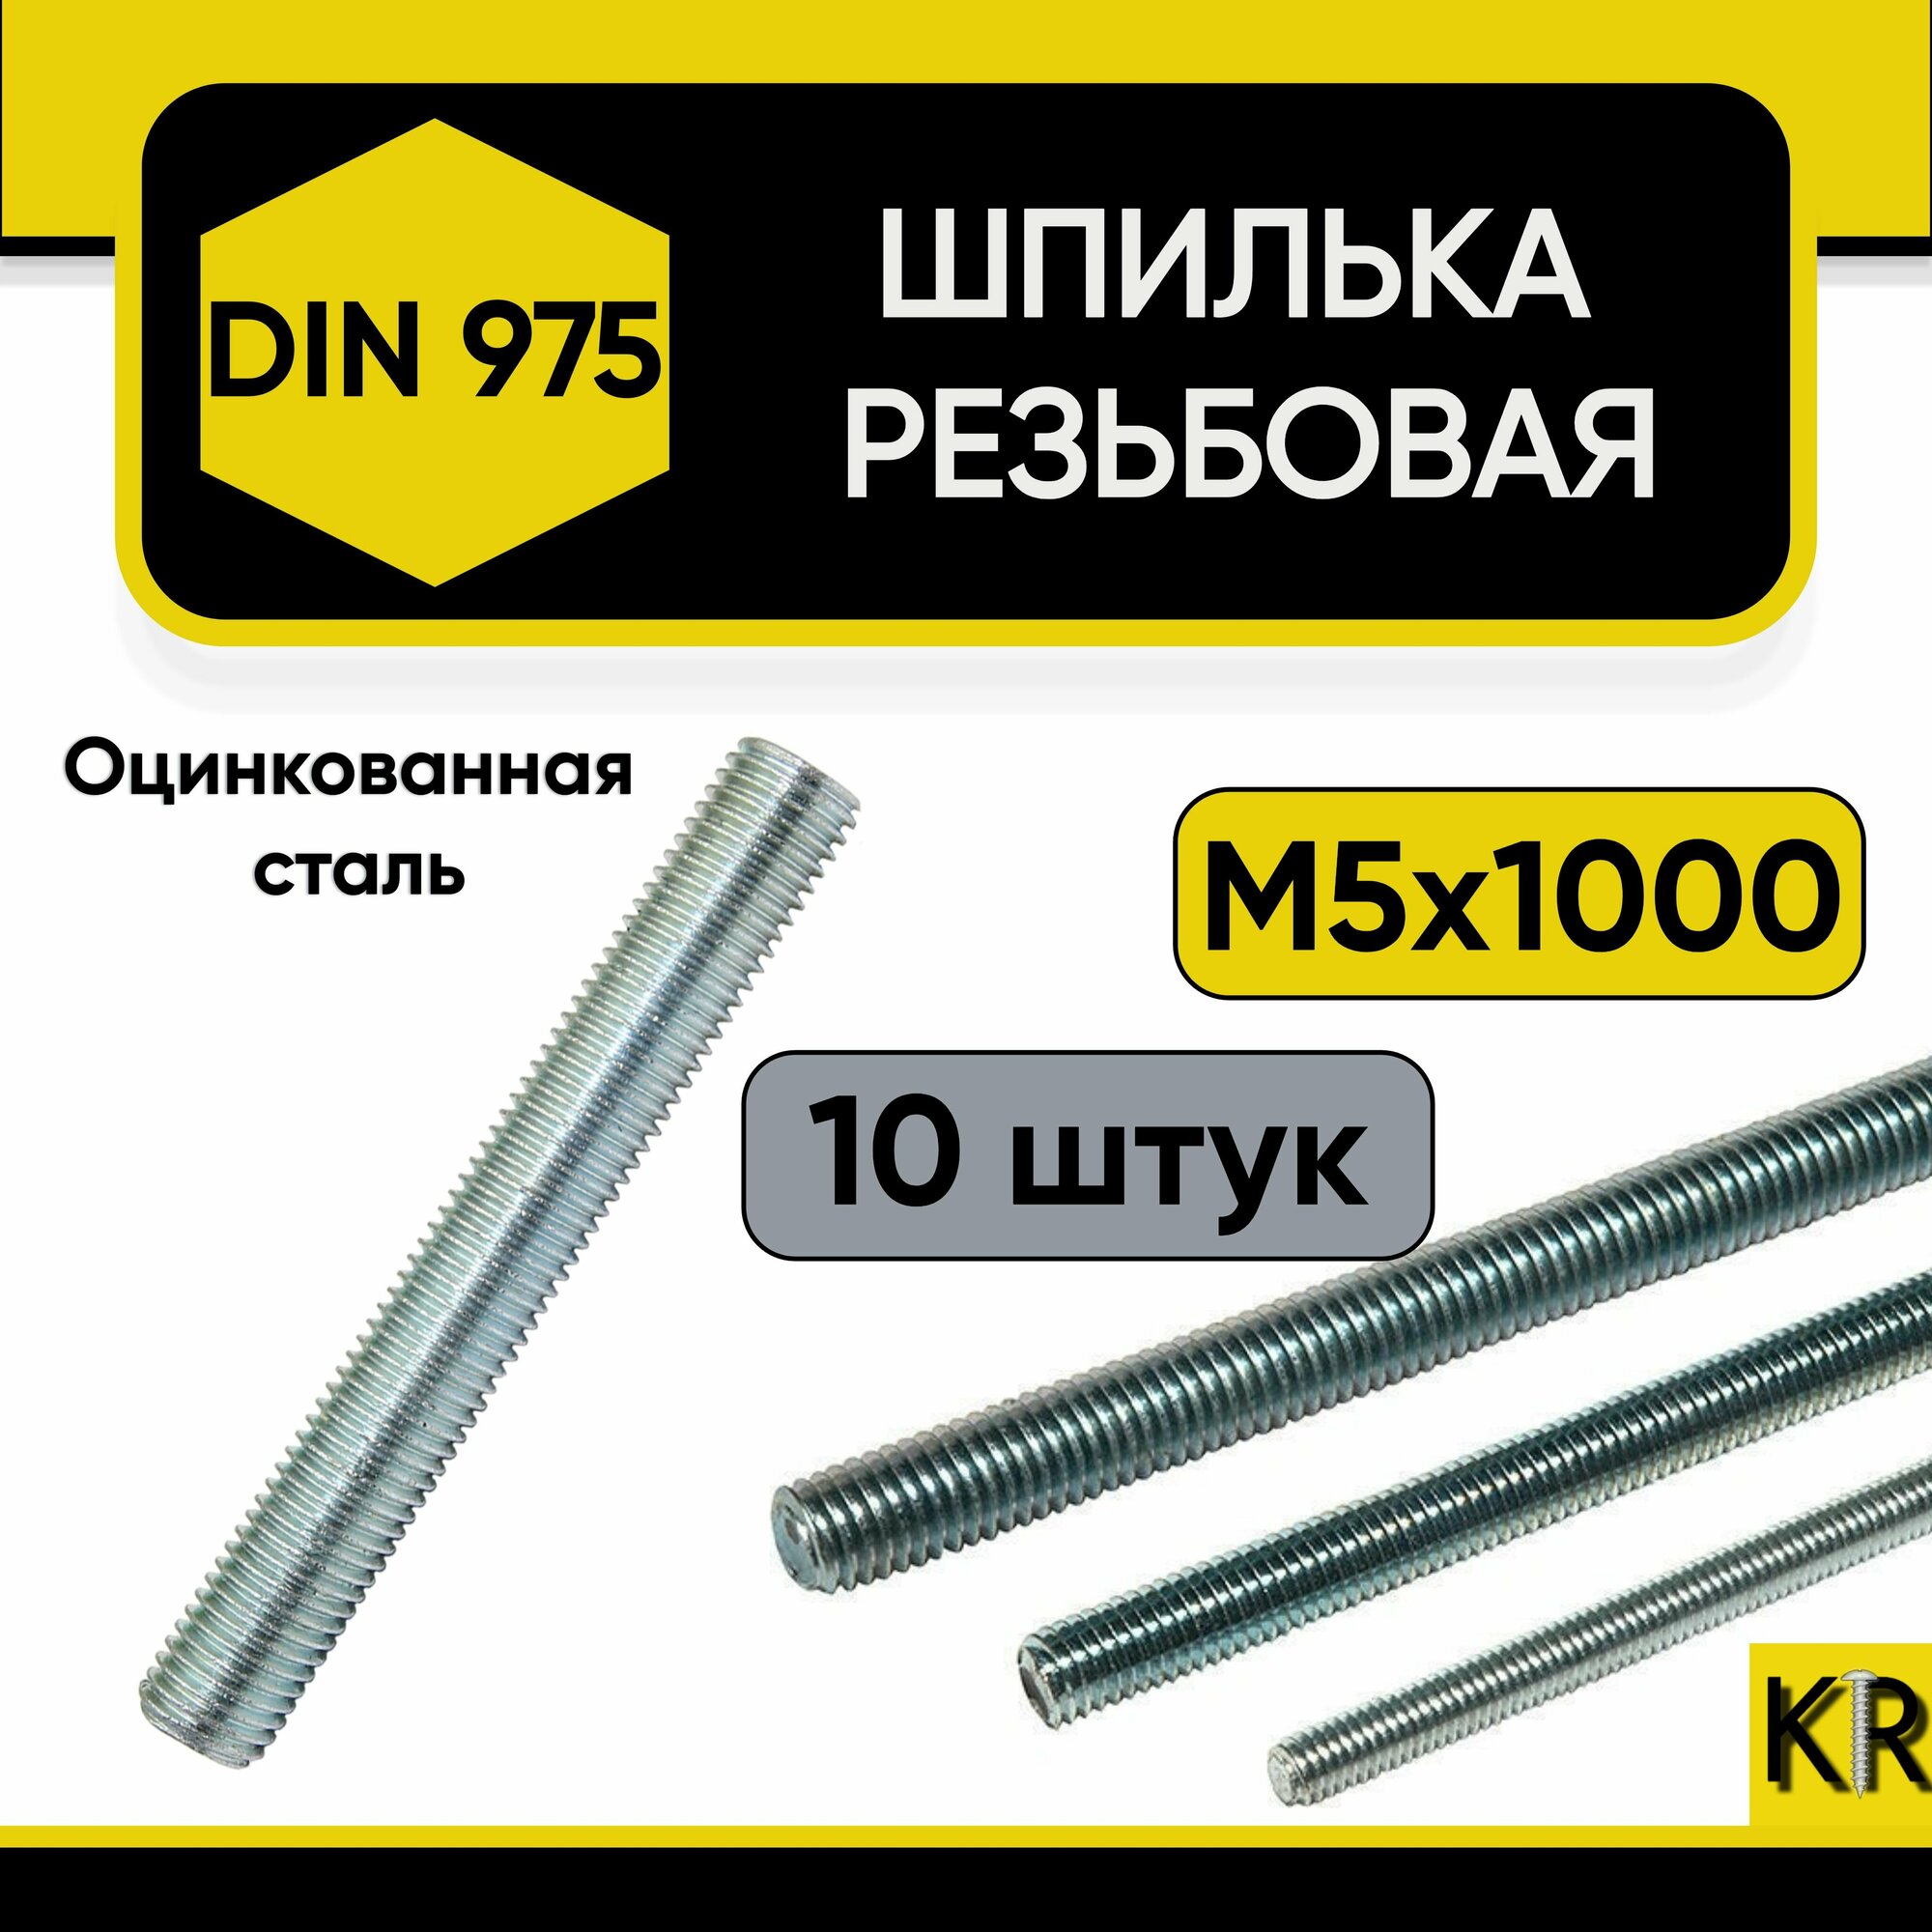 Шпилька резьбовая М5 х 1000 мм, 10 шт. DIN 975, оцинкованная, стальная